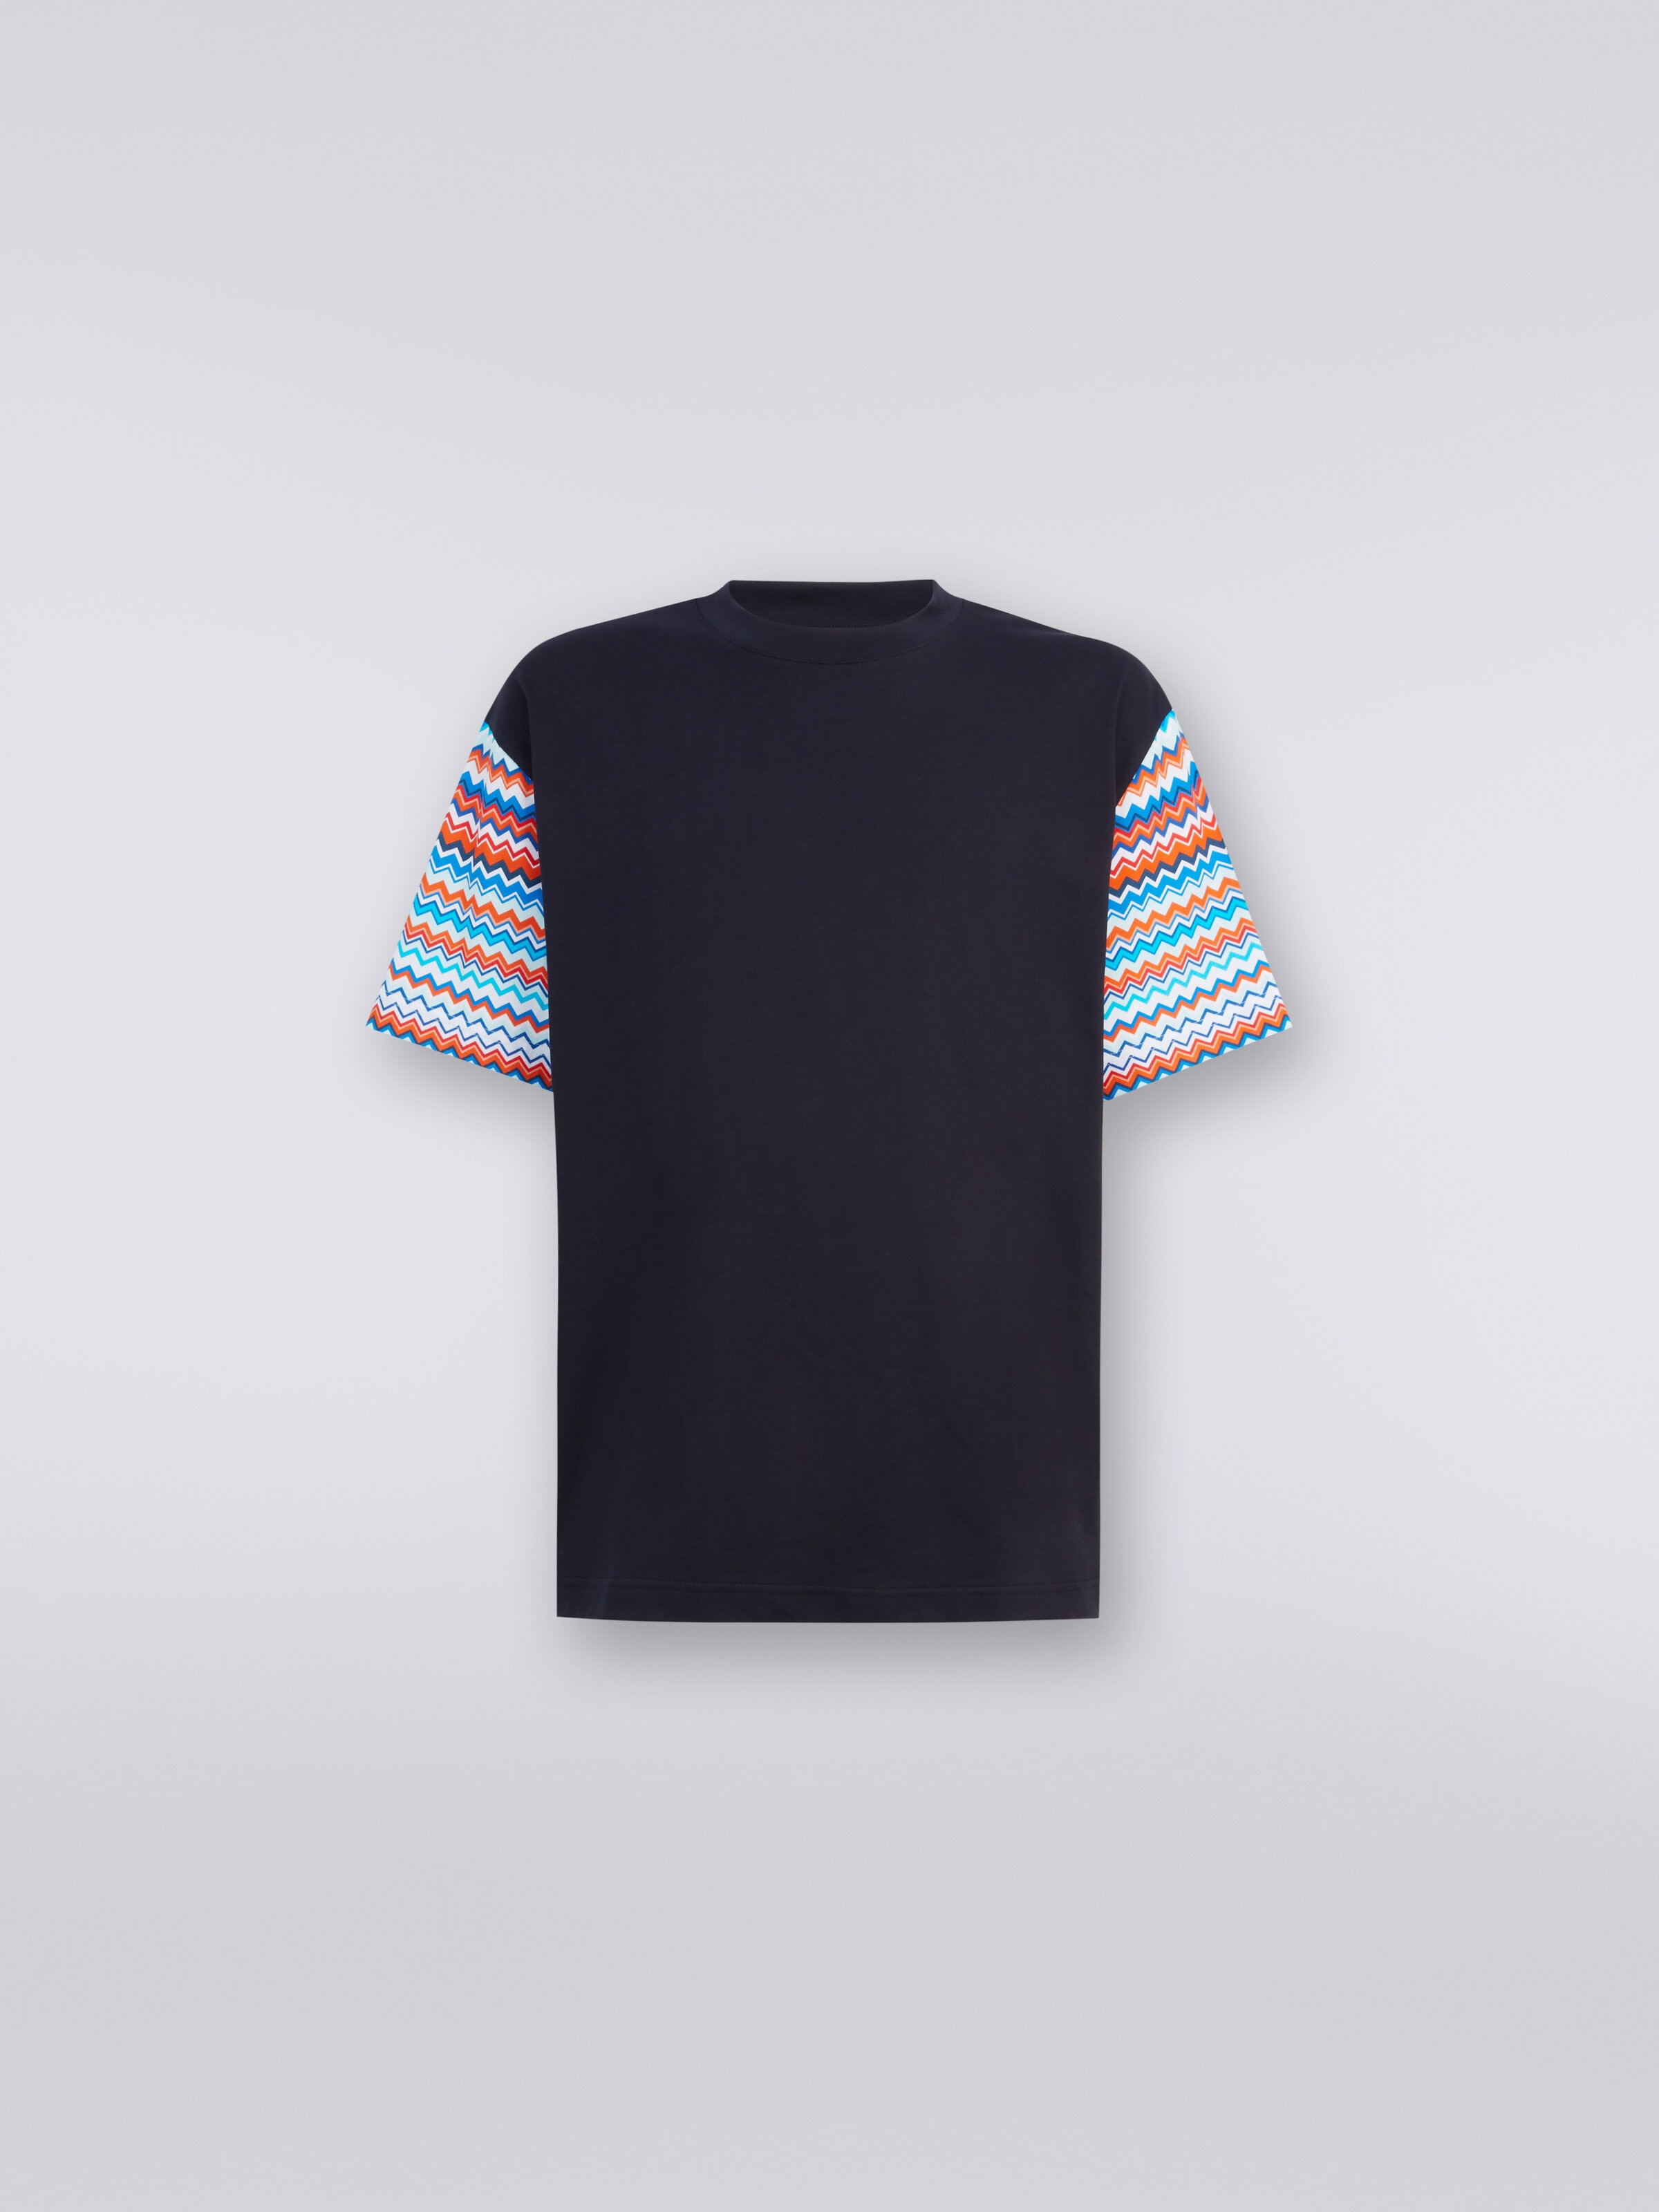 Camiseta extragrande de algodón con inserciones zigzag, Multicolor  - 0